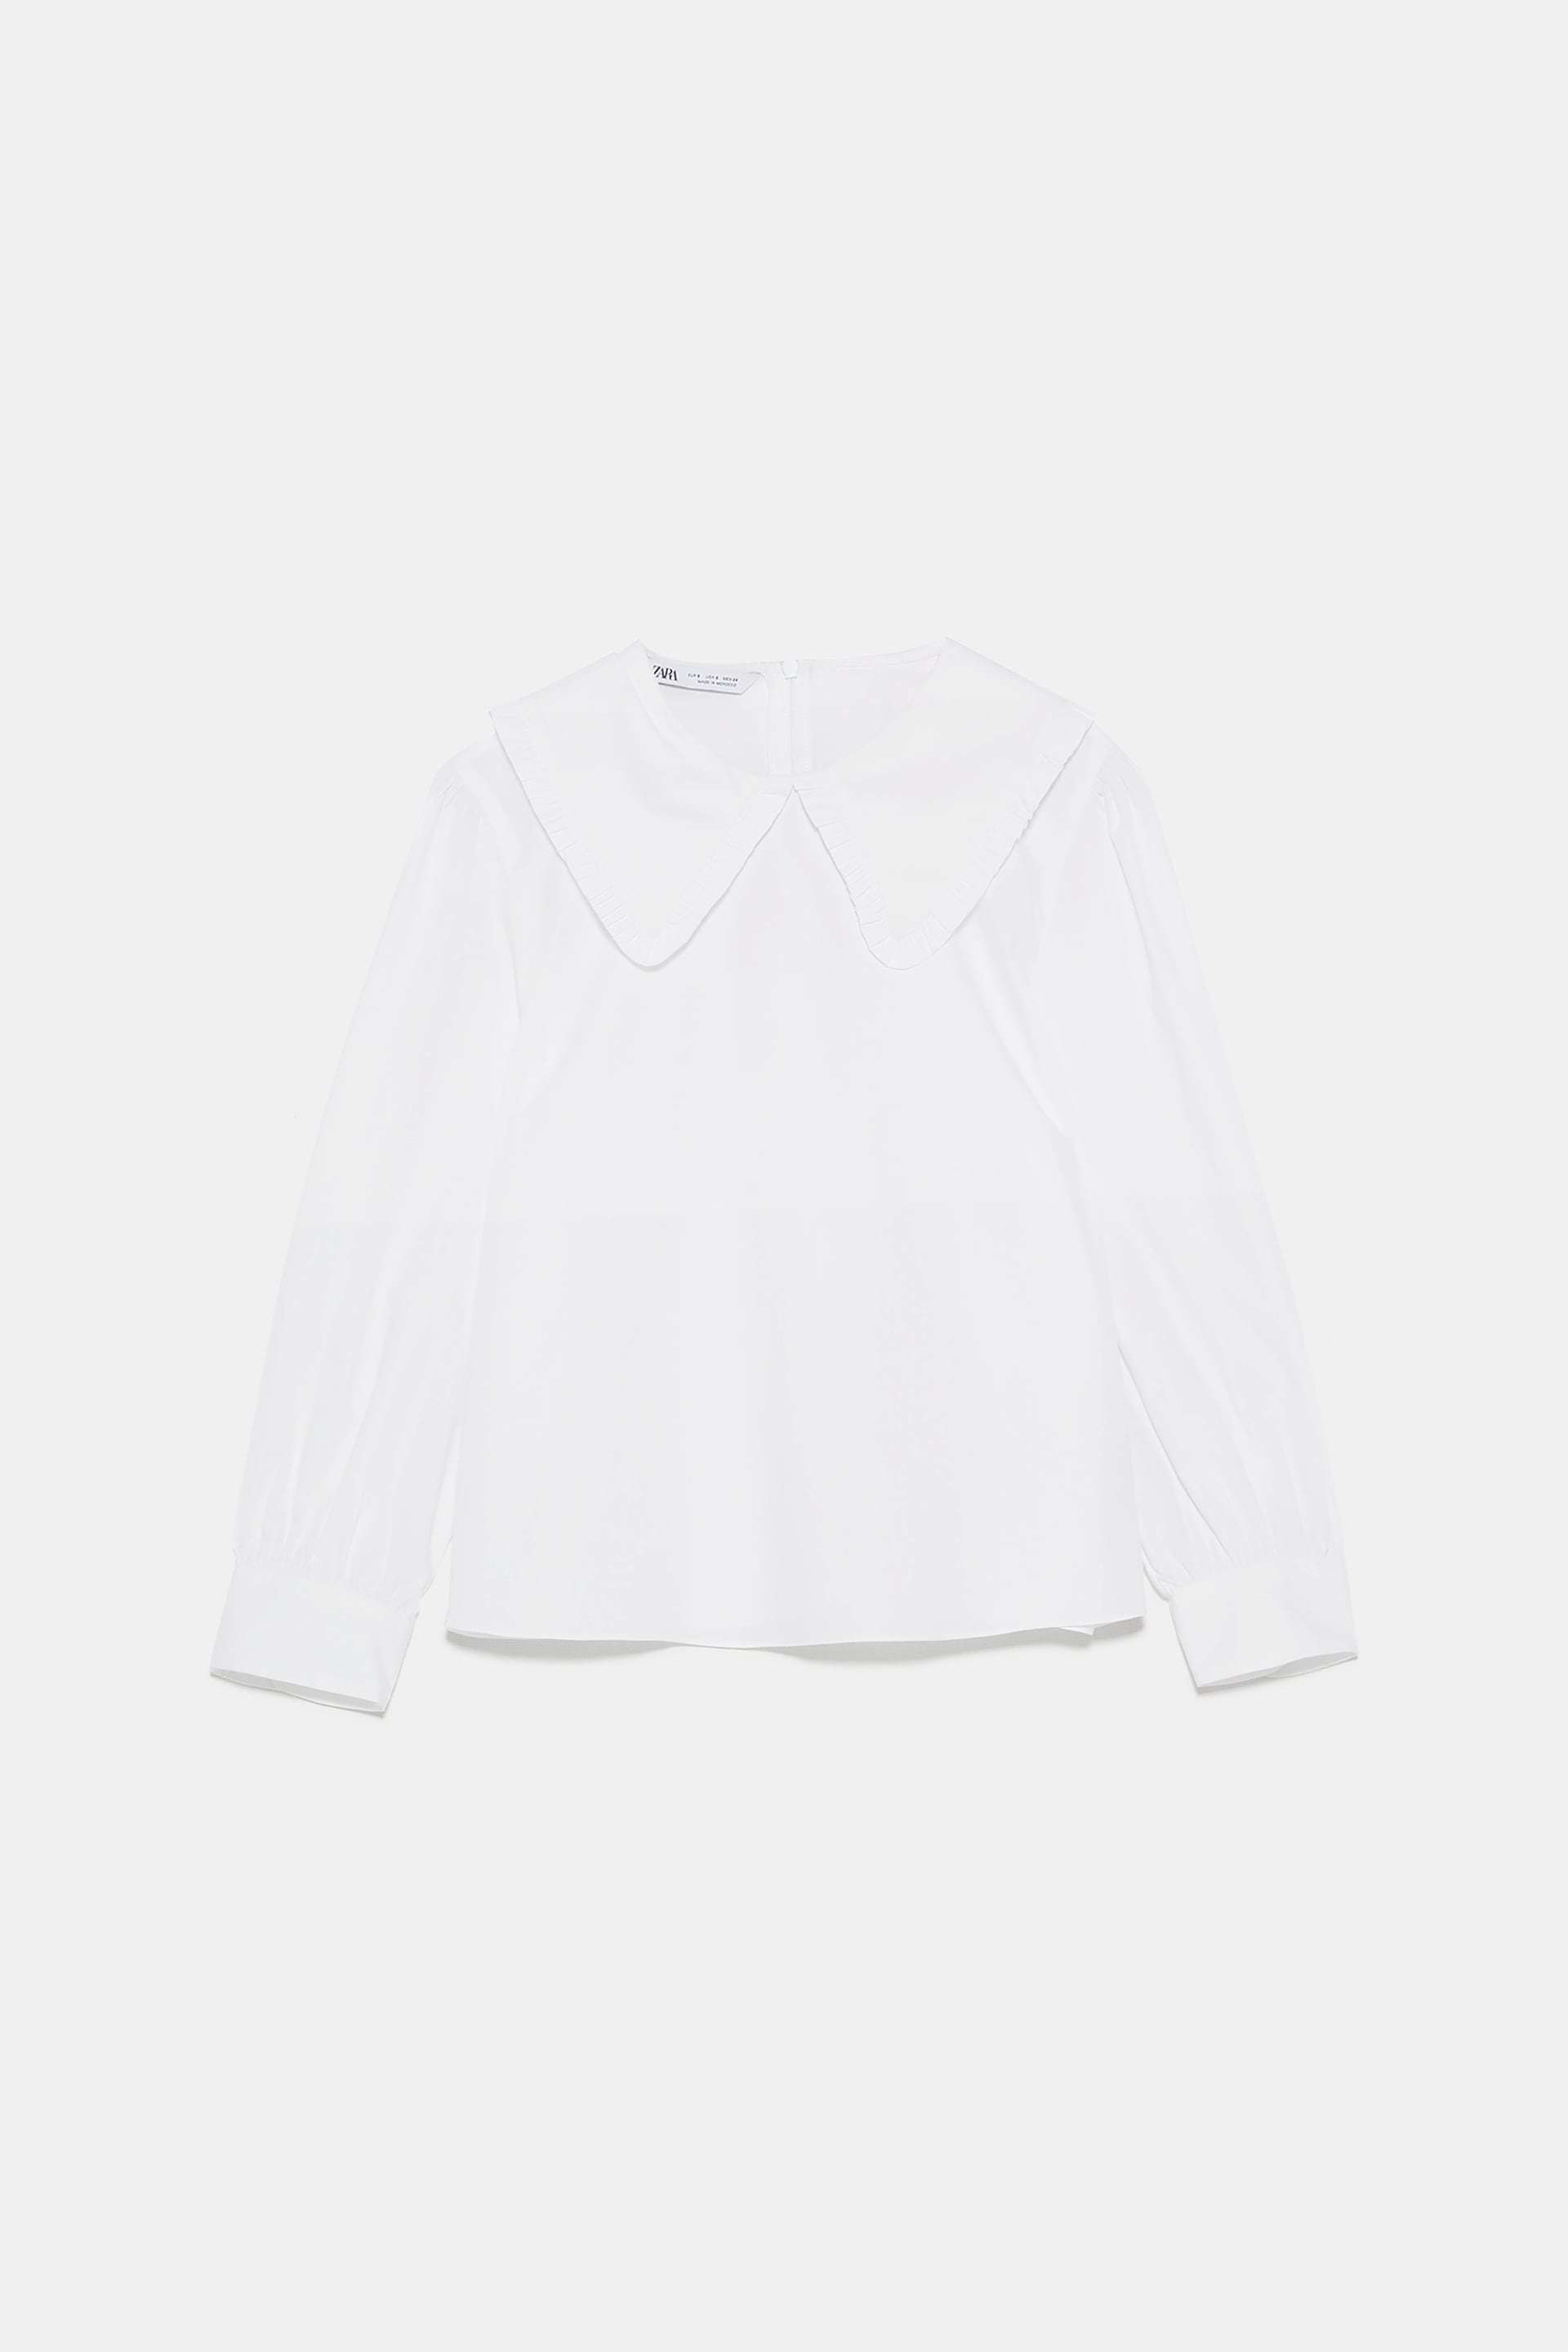 La blusa de Zara (29,95 euros).